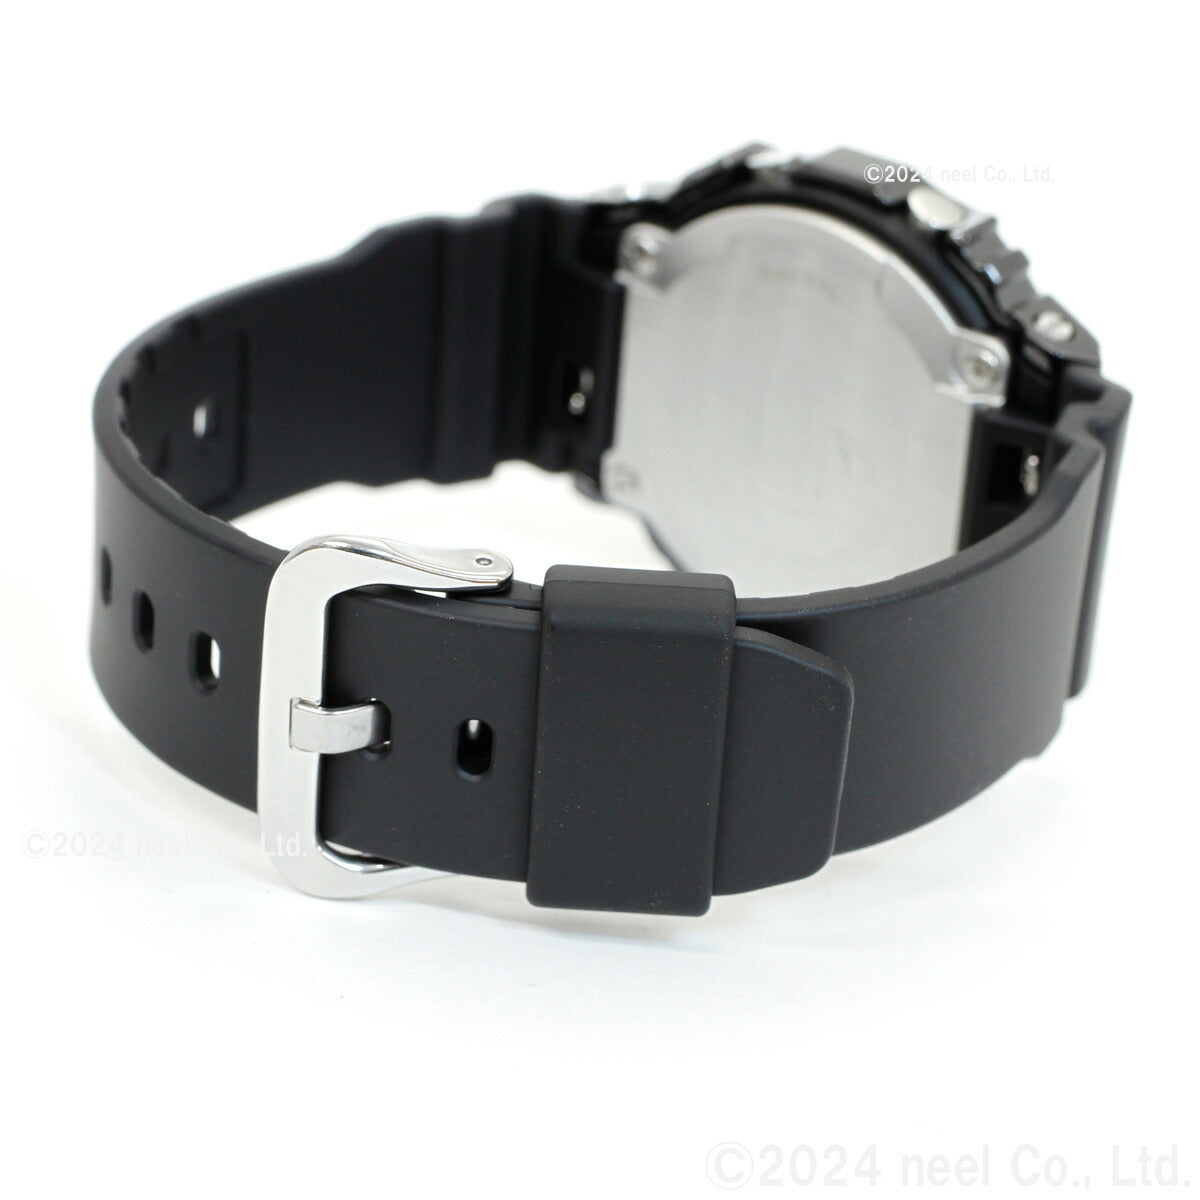 G-SHOCK デジタル カシオ Gショック CASIO 腕時計 メンズ GM-5600UB-1JF オールブラック メタルカバー LEDバックライト